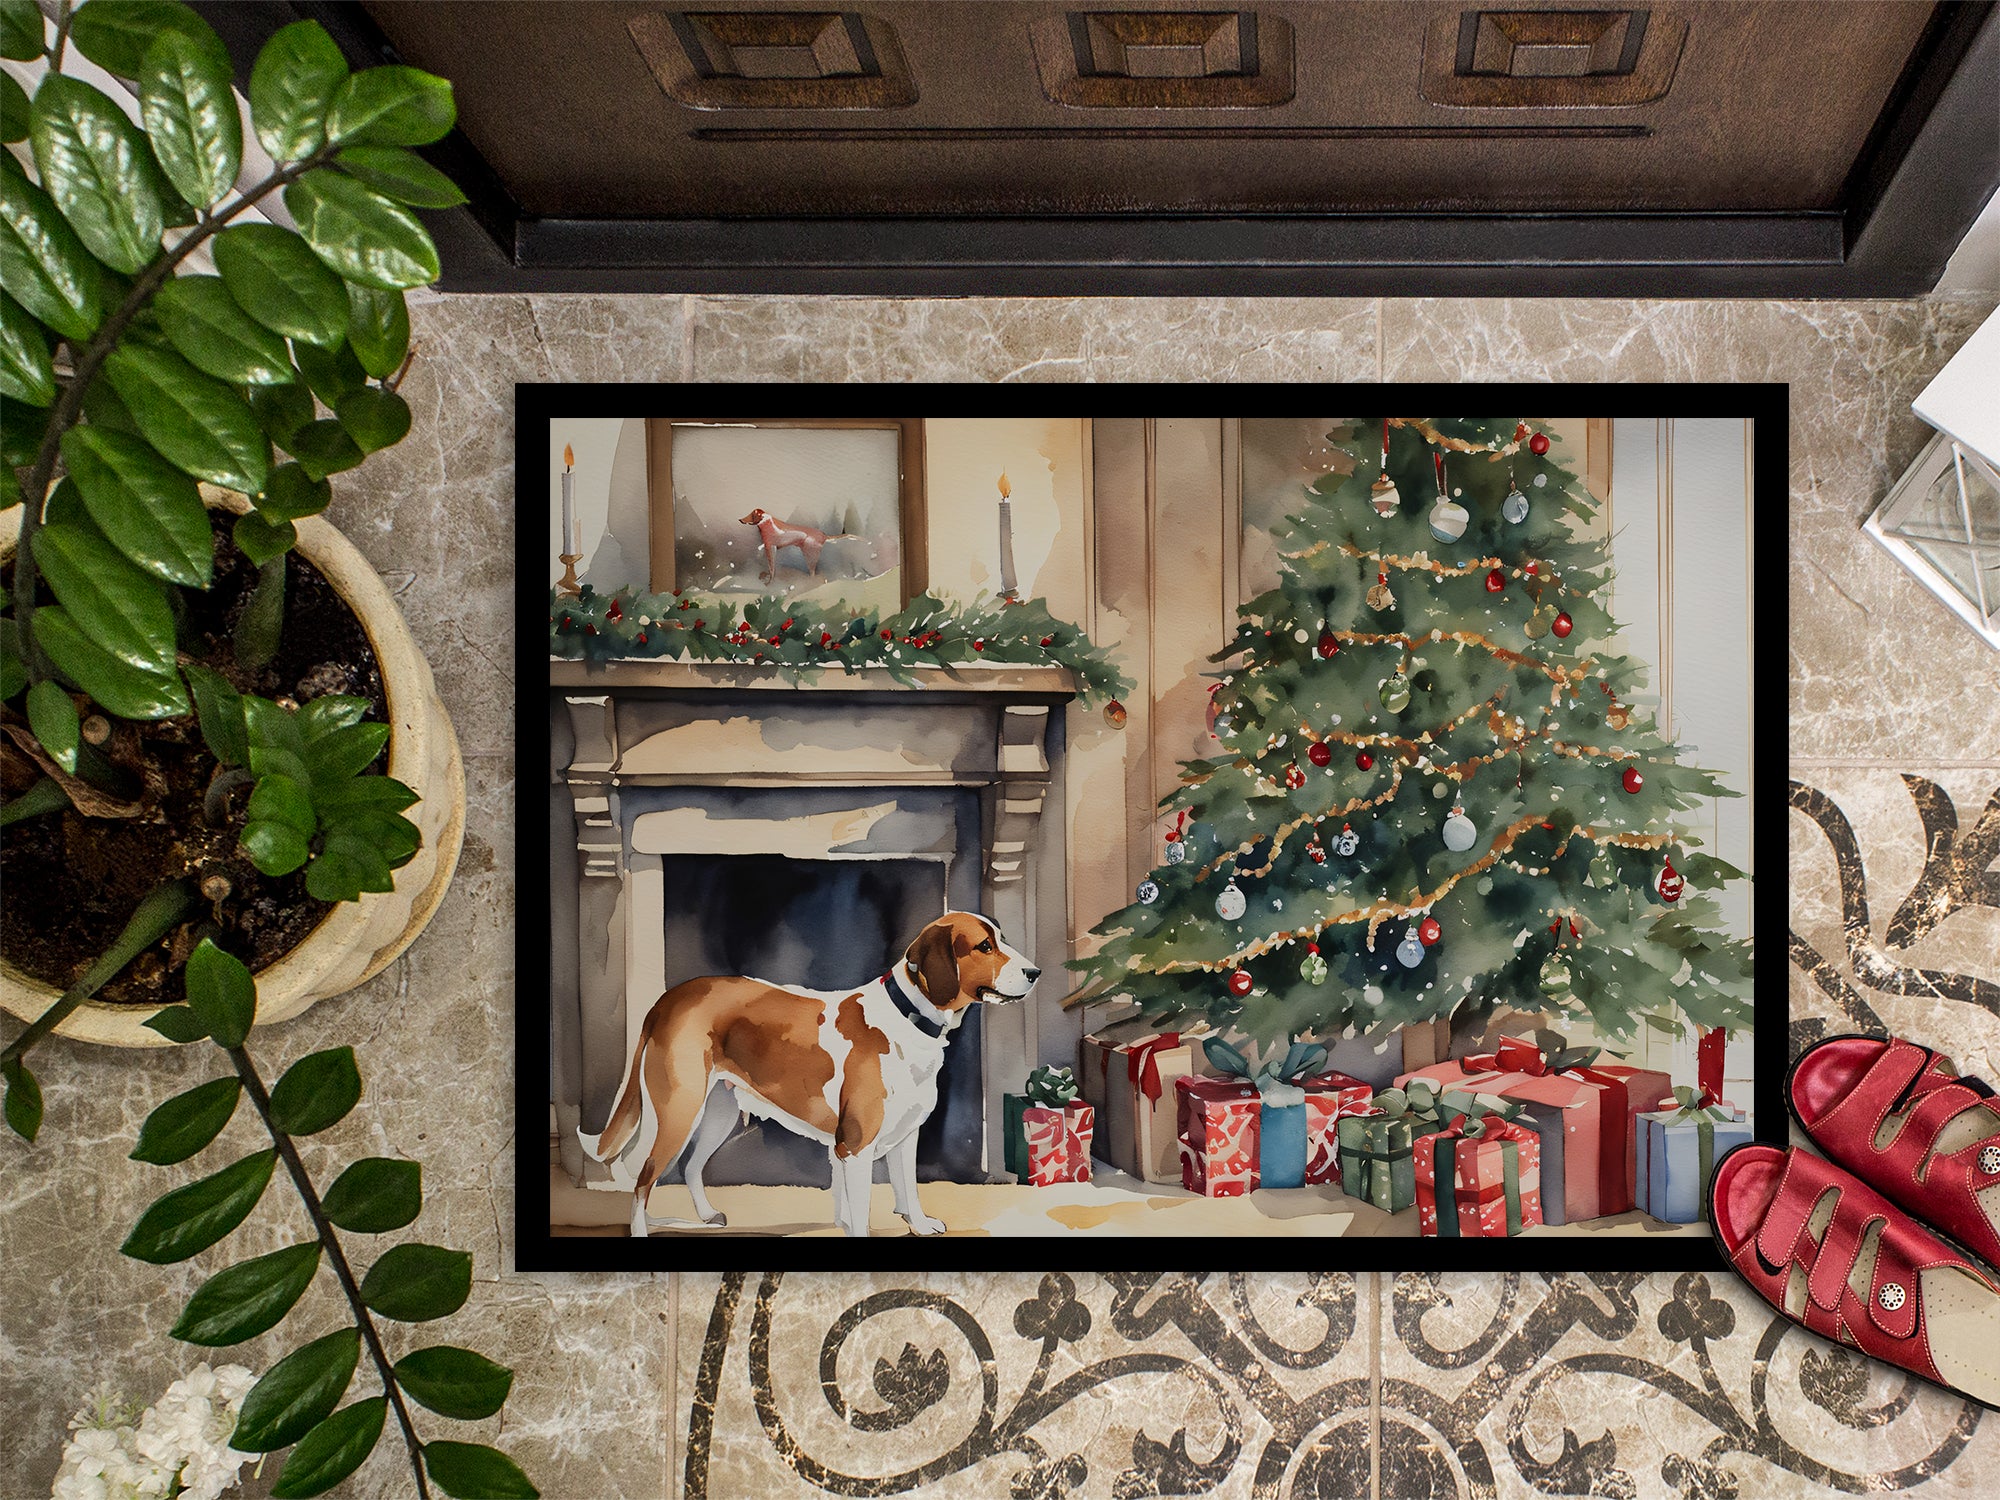 English Foxhound Cozy Christmas Doormat